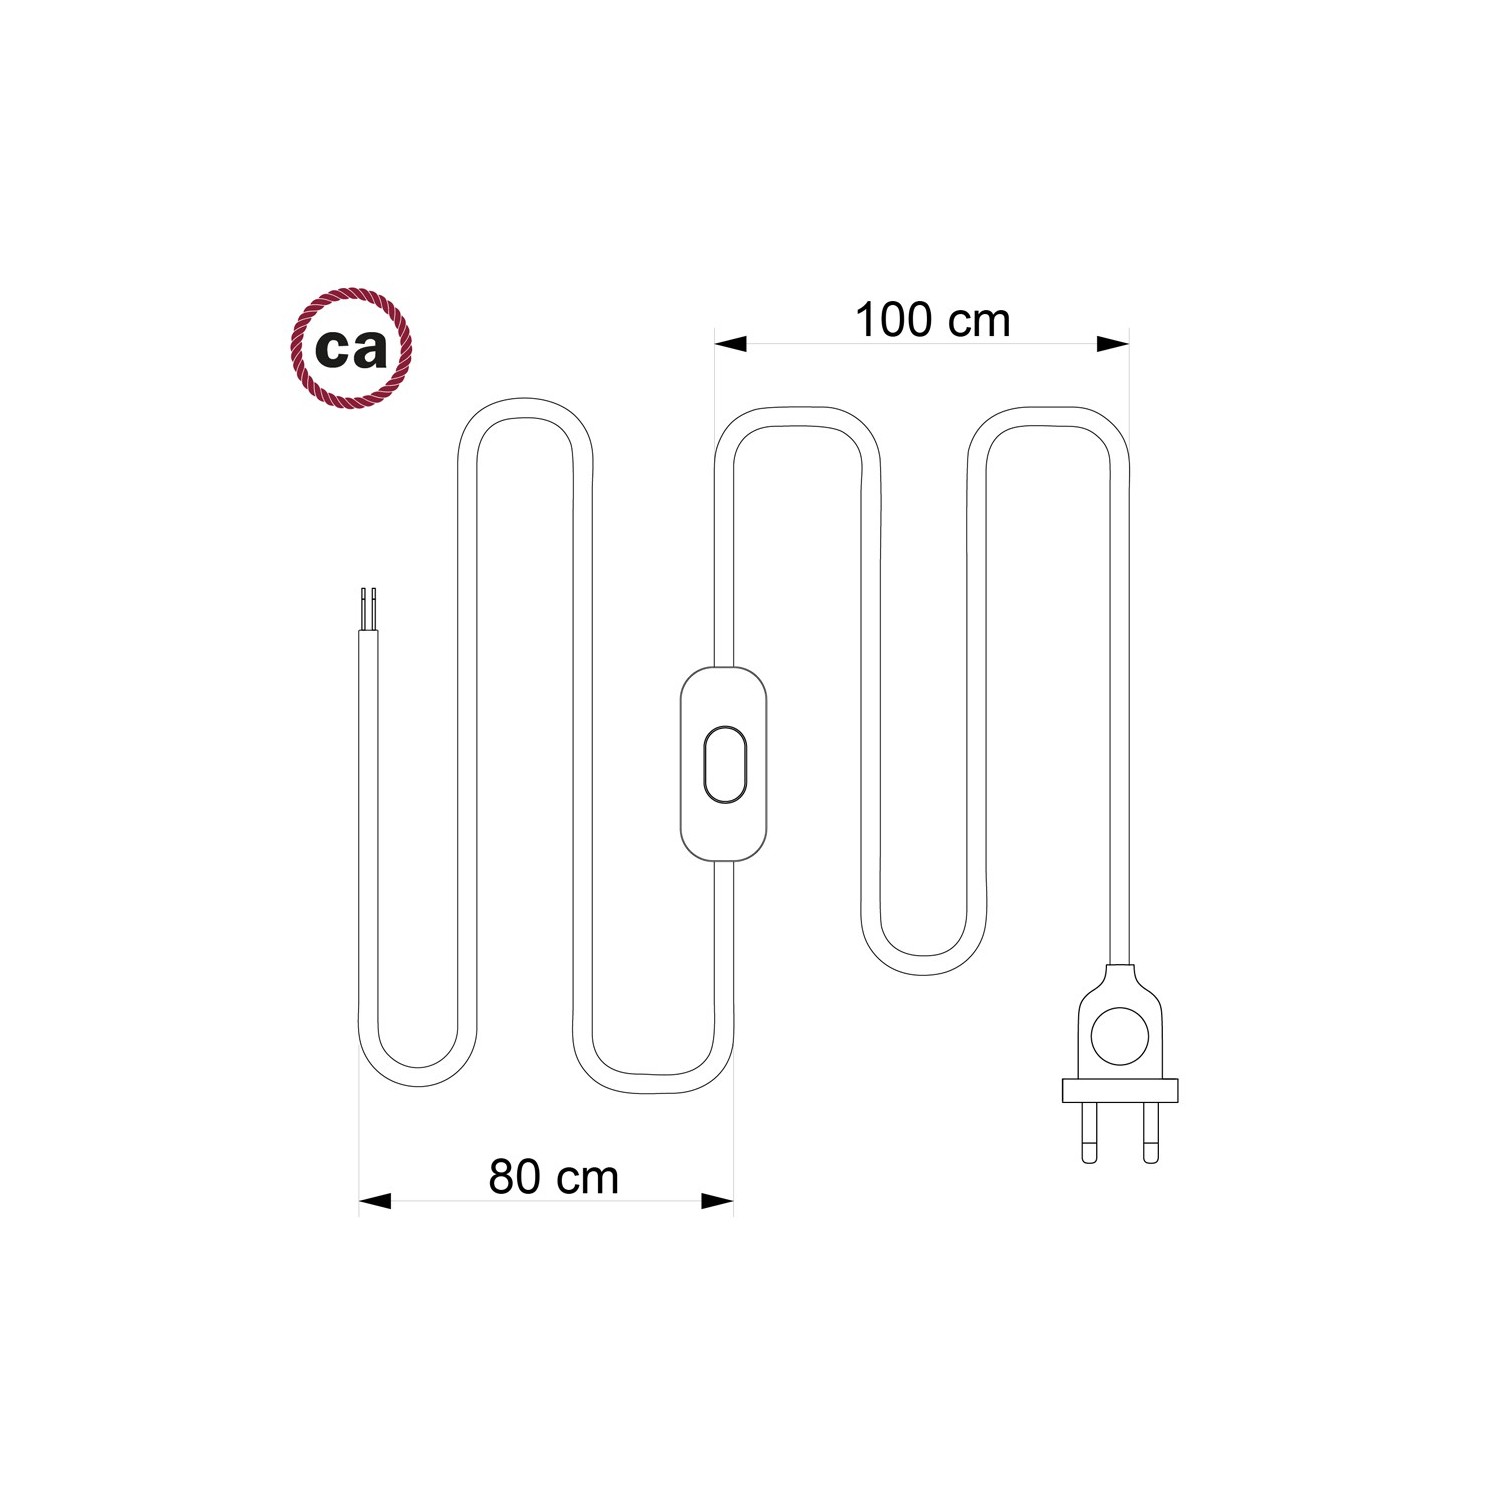 Sladdställ, RM16 Ljusrosa Viskos 1,80 m. Välj färg på strömbrytare och kontakt